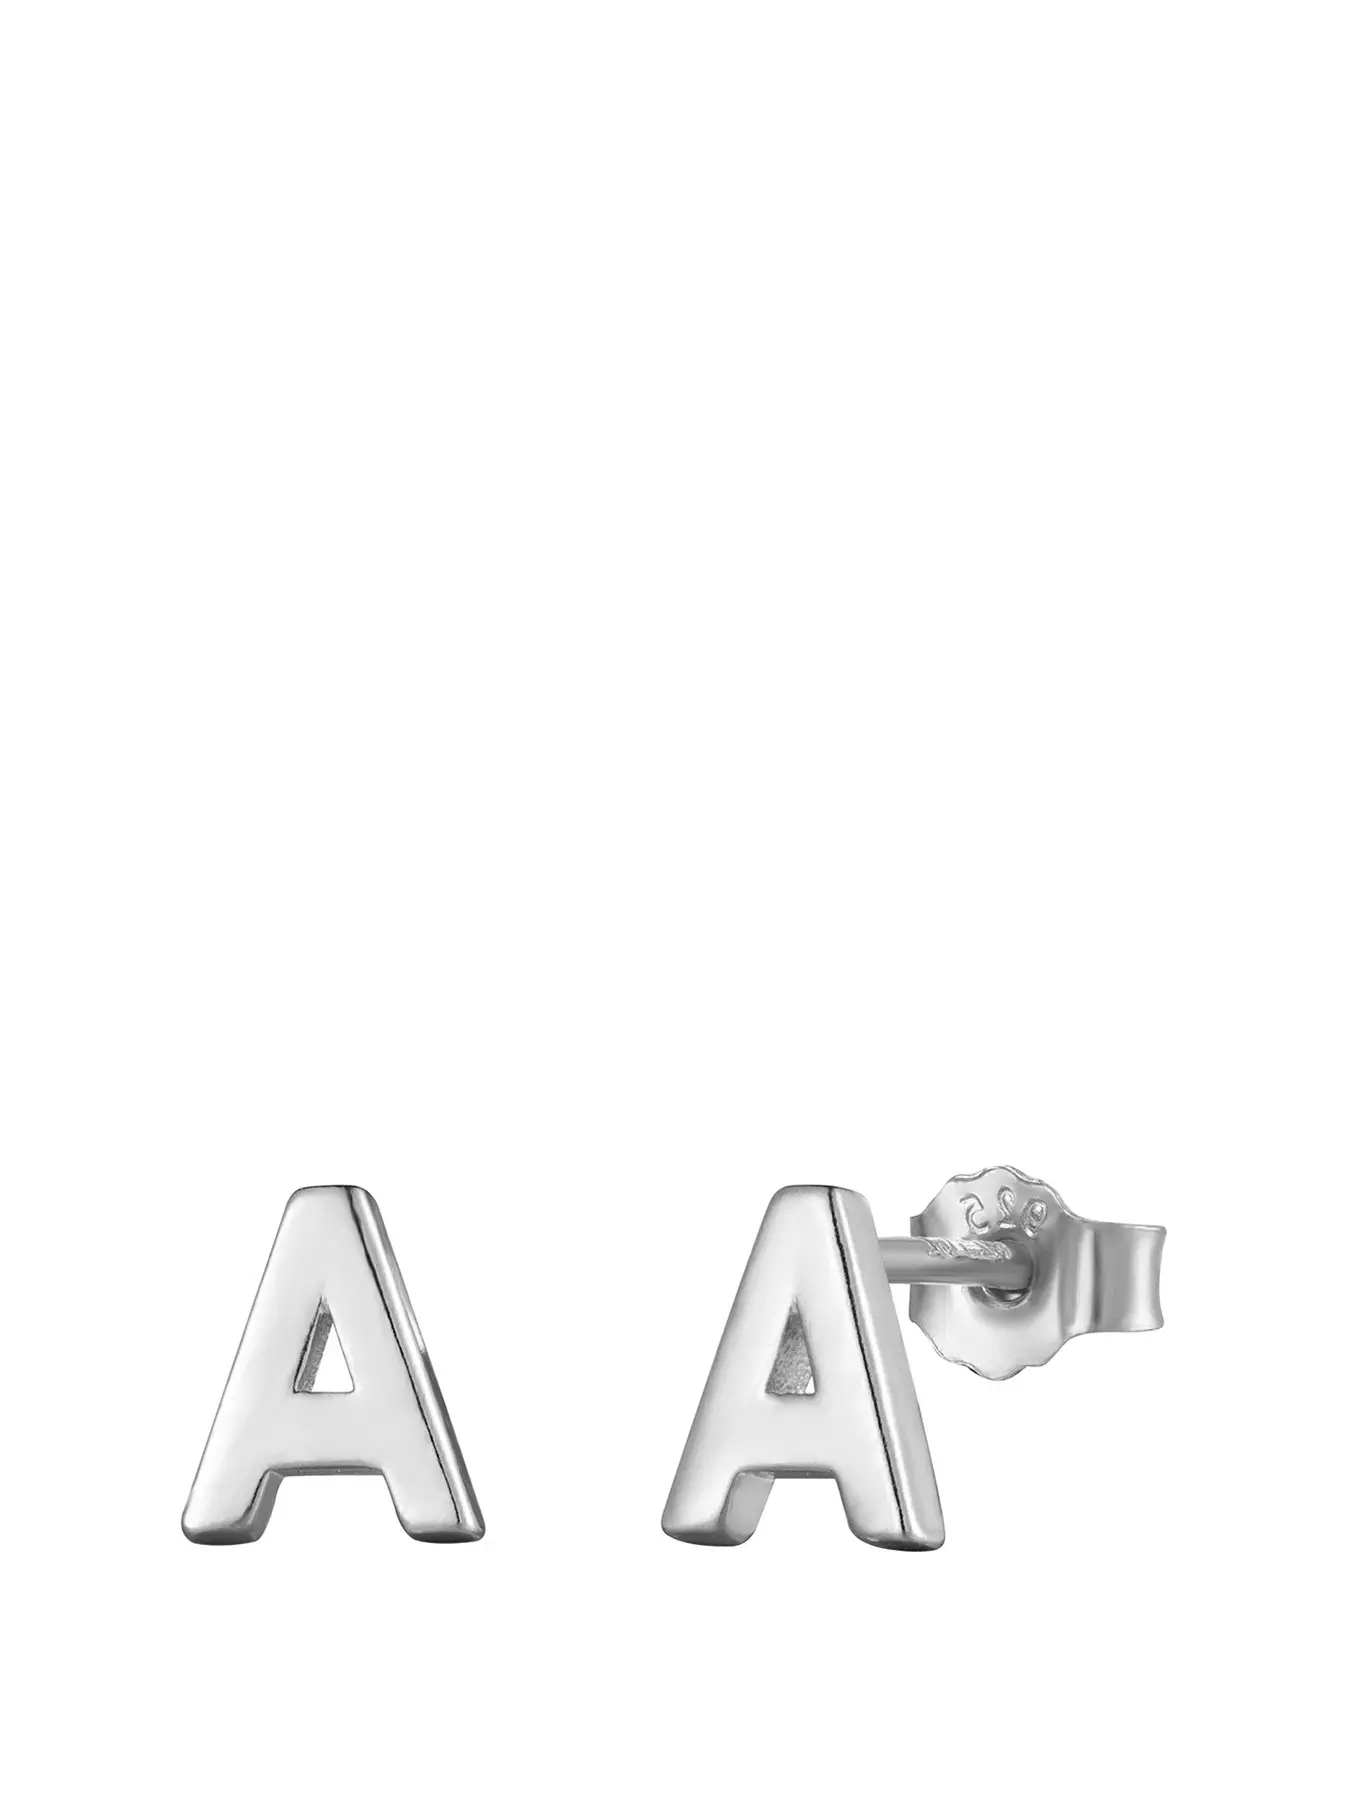 Bookshelf: Starter Kit for Block Alphabet Initial Charms in Sterling Silver  .925